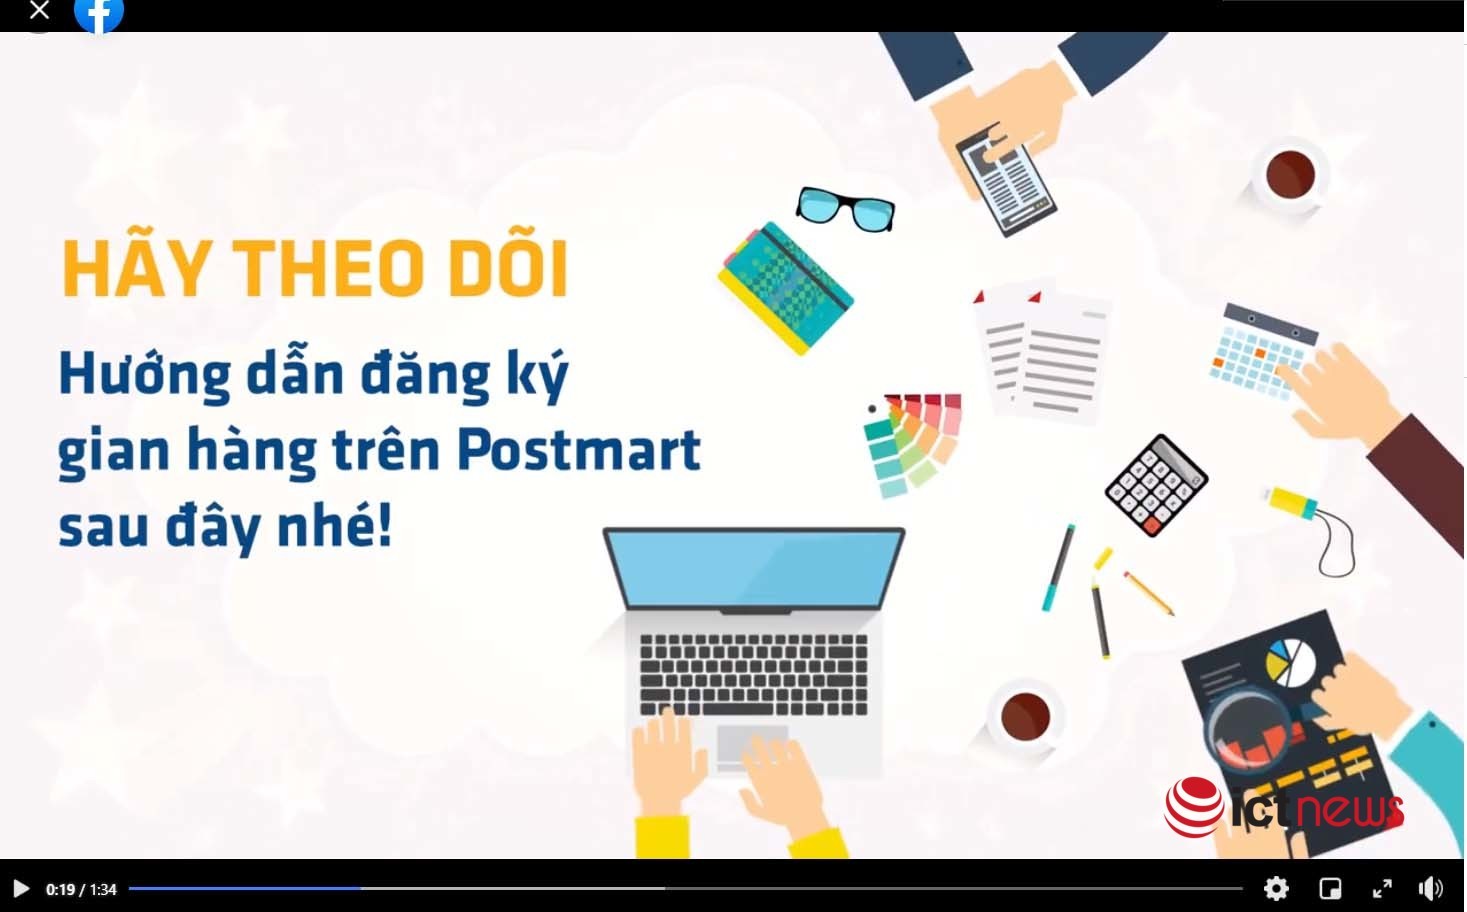 Vải Bắc Giang bán qua Postmart, Vỏ Sò đã chiếm gần 3,6% tổng sản lượng